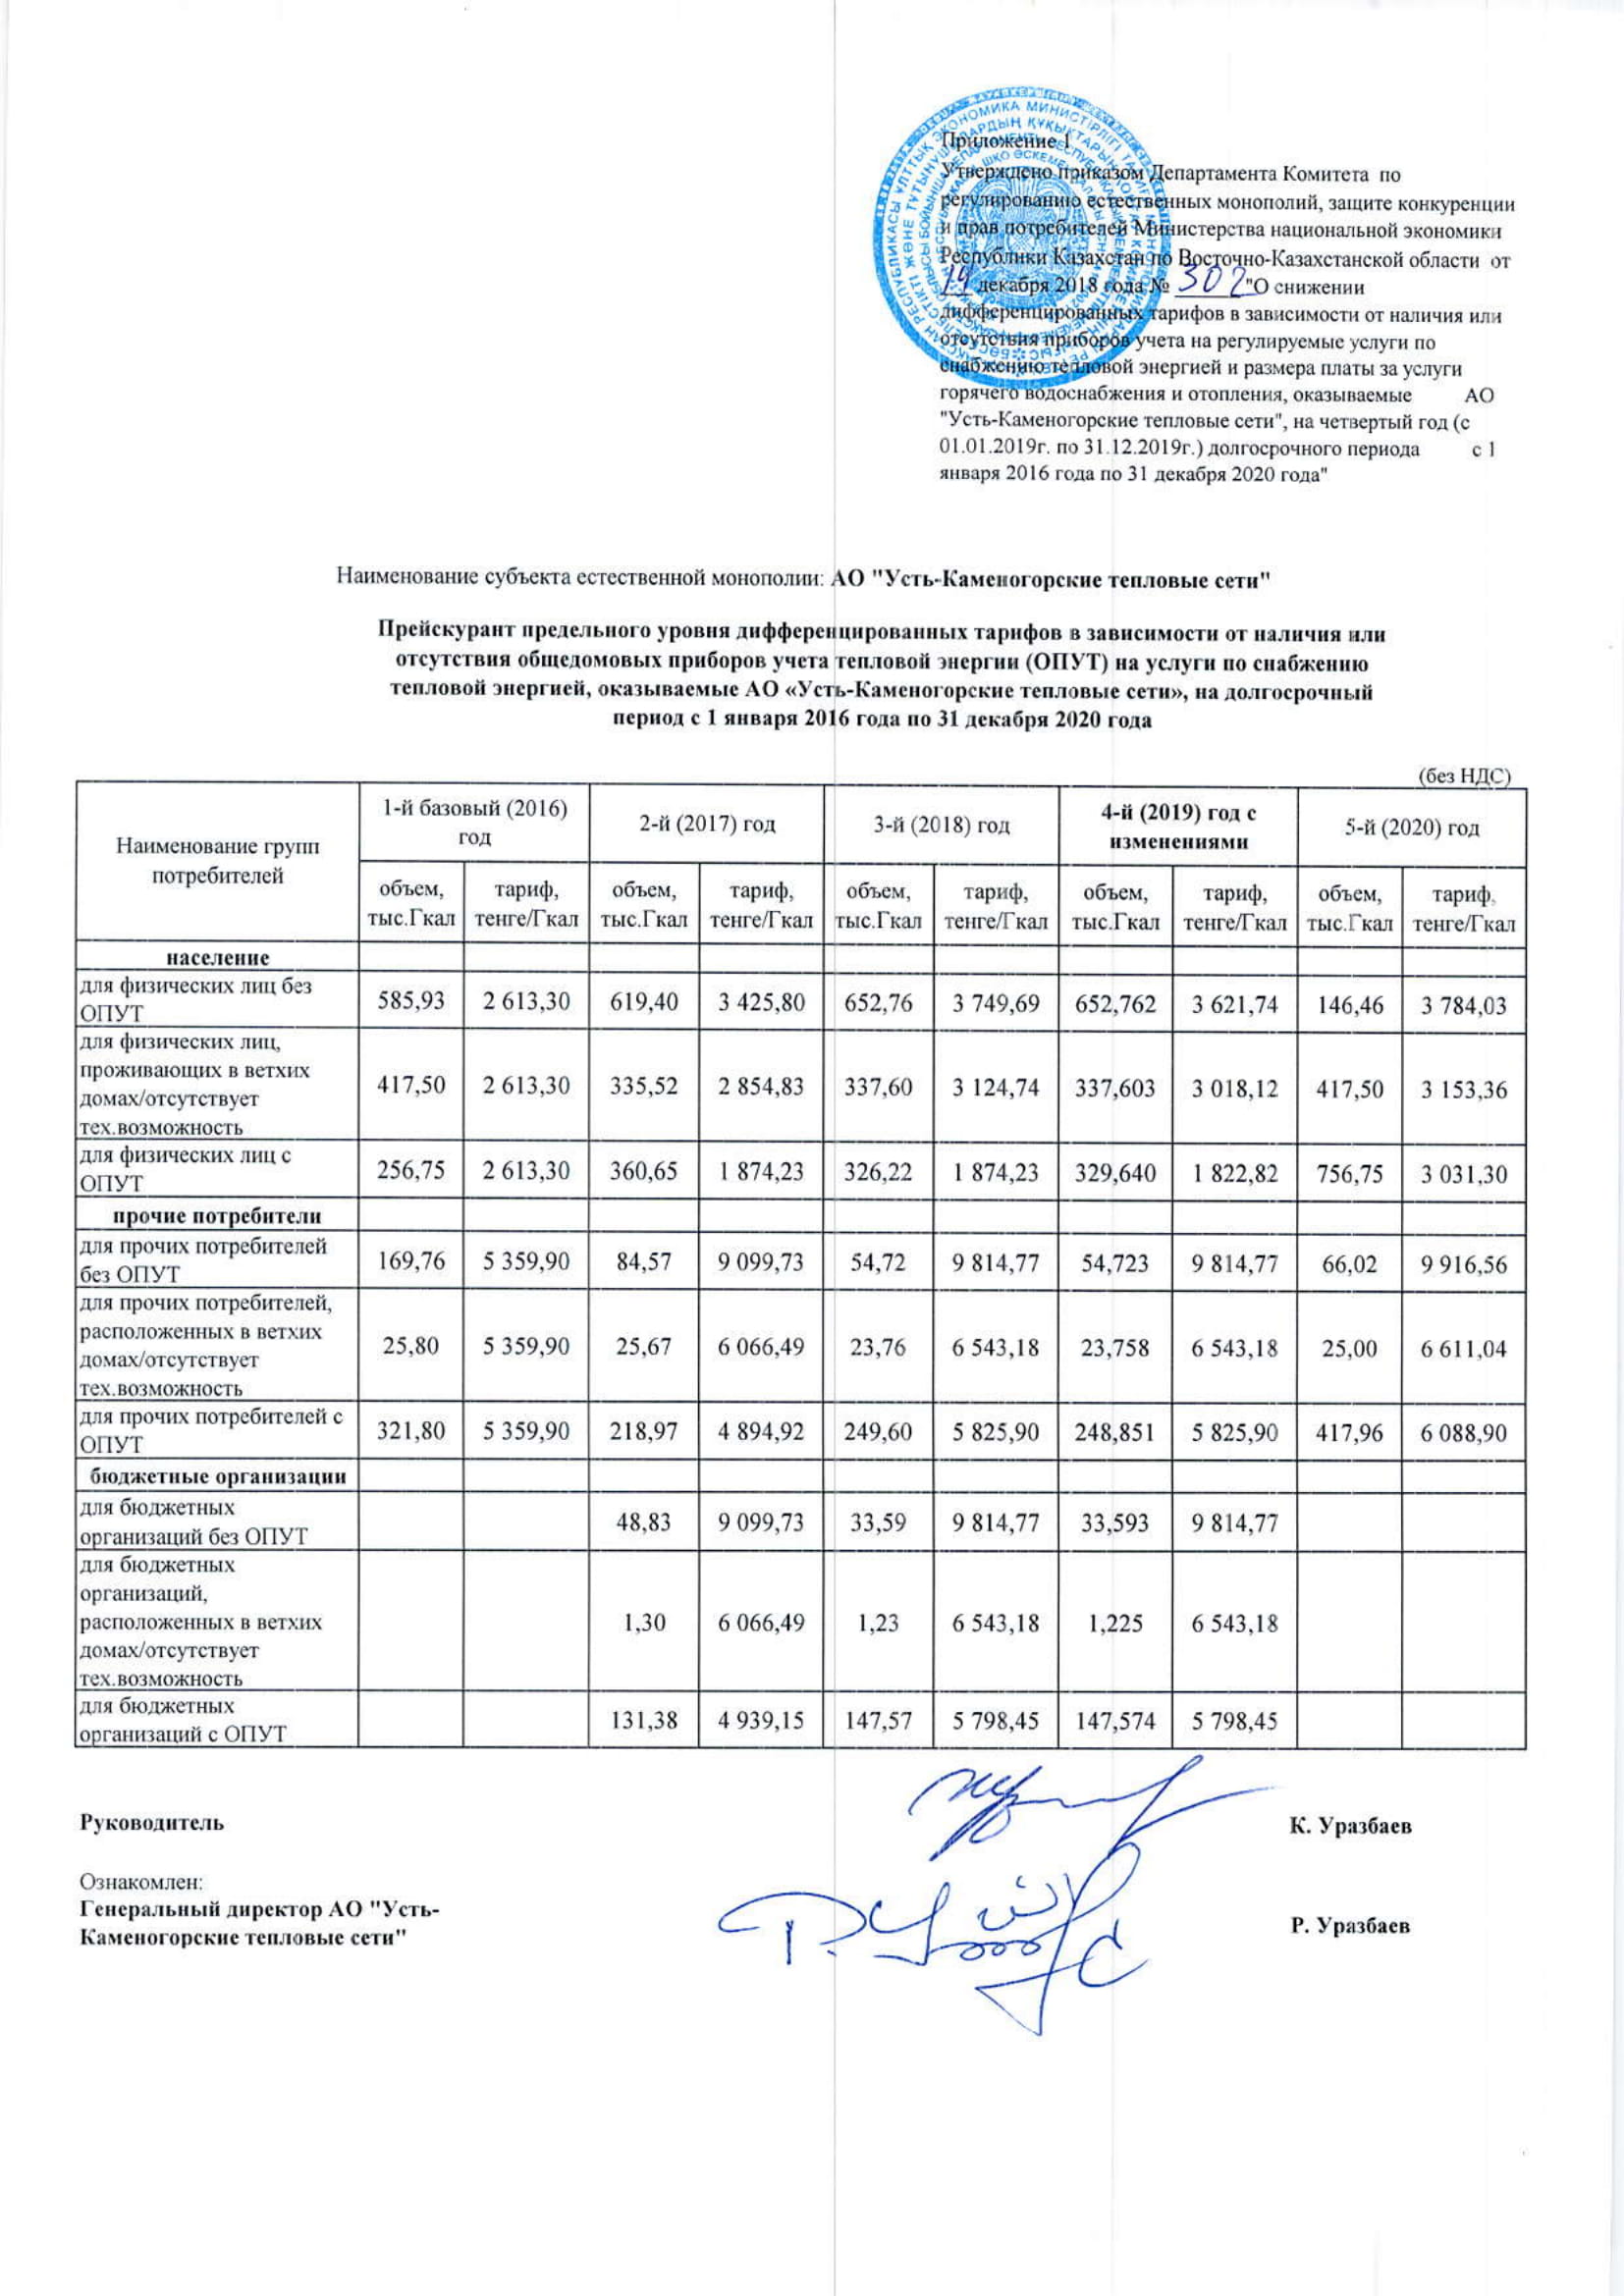 Тариф (ціна, ставка збору) - грошовий вираз вартості послуг суб'єкта природної монополії, затверджене державним органом, що здійснює контроль і регулювання діяльності в сфері природної монополії, таким для м Усть-Каменогорськ є Департамент Агентства РК з регулювання природних монополій і захисту конкуренції по ВКО